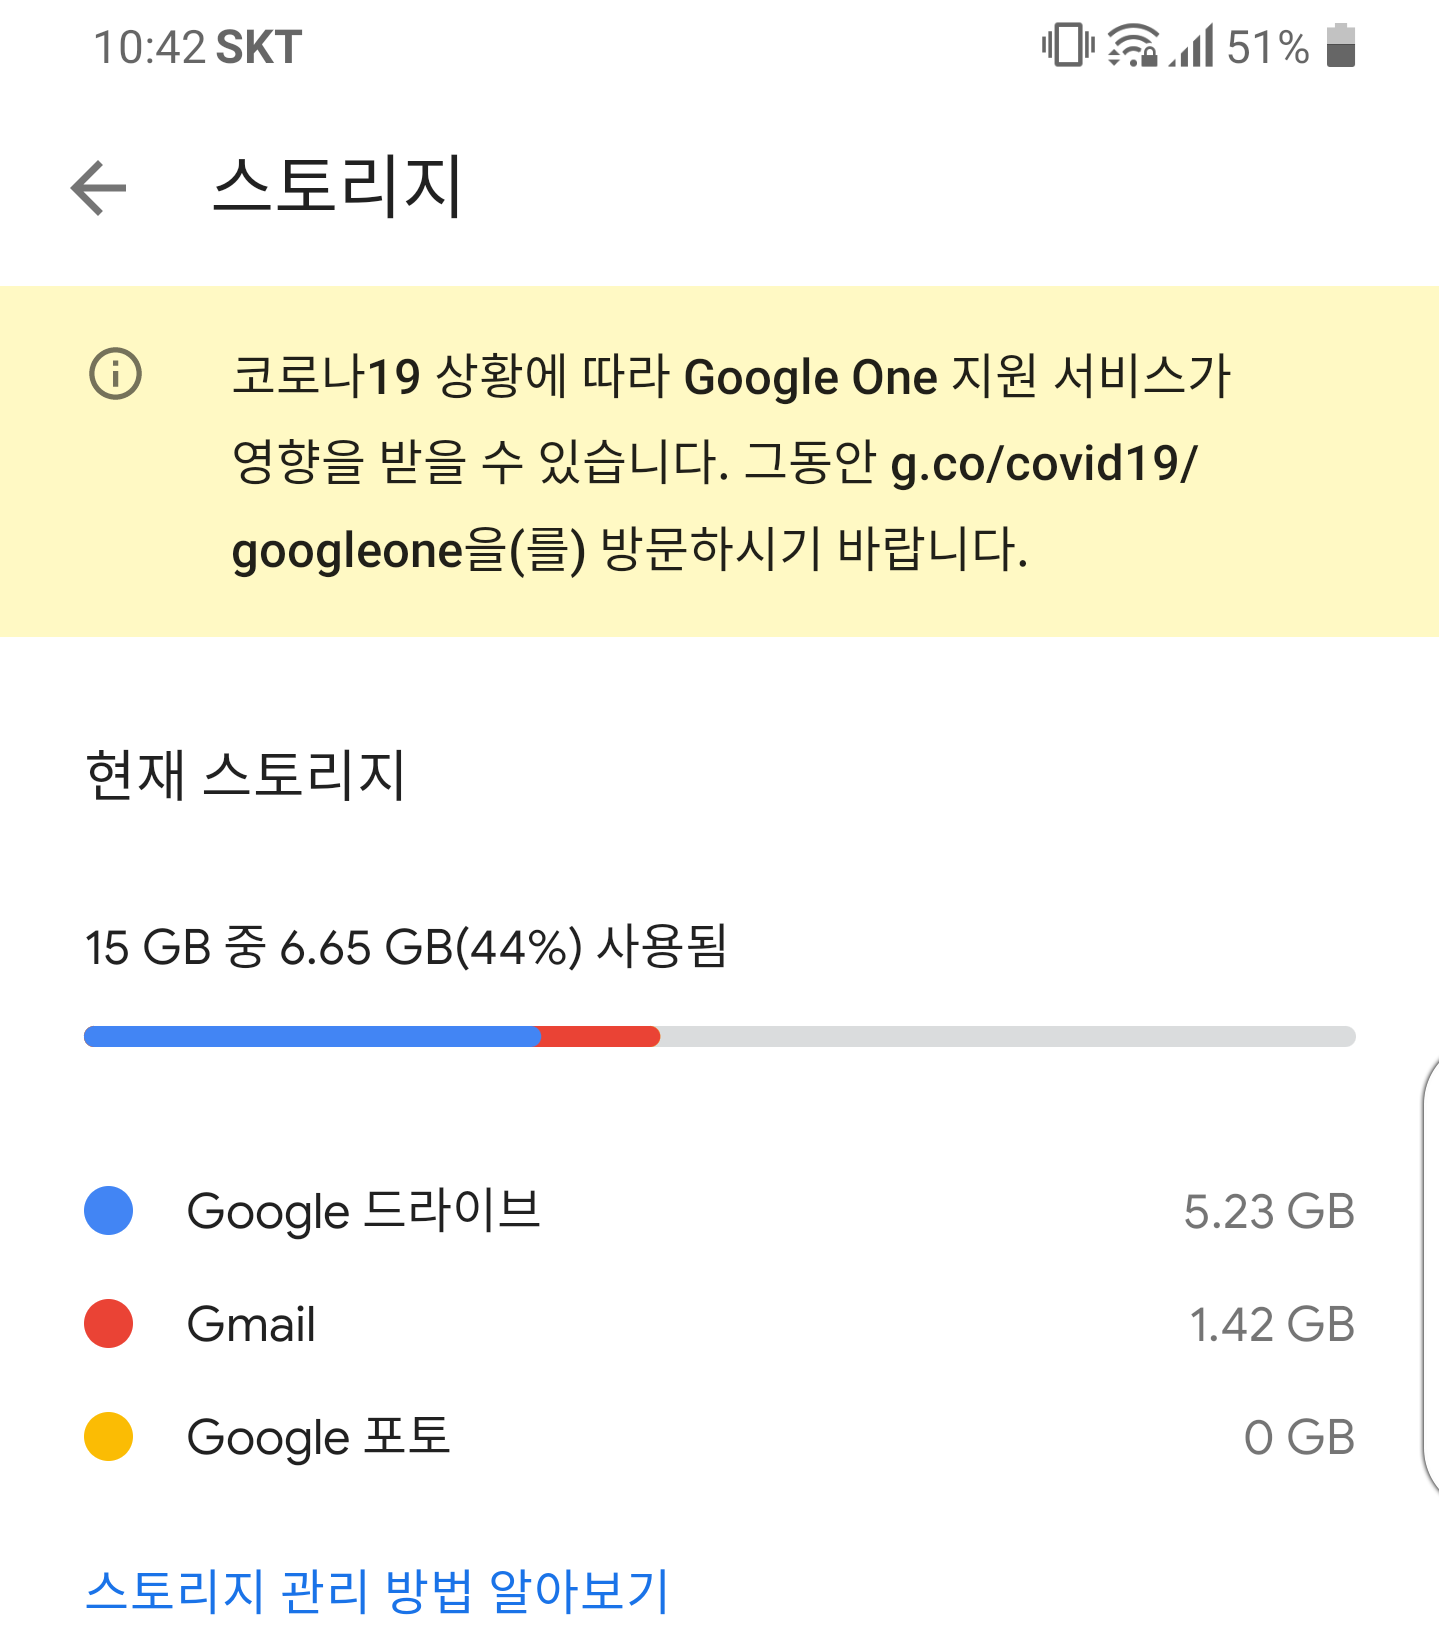 Google One 스토리지는 드라이브 지메일 구글포토 용량이 모두가 포함되어 있습니다